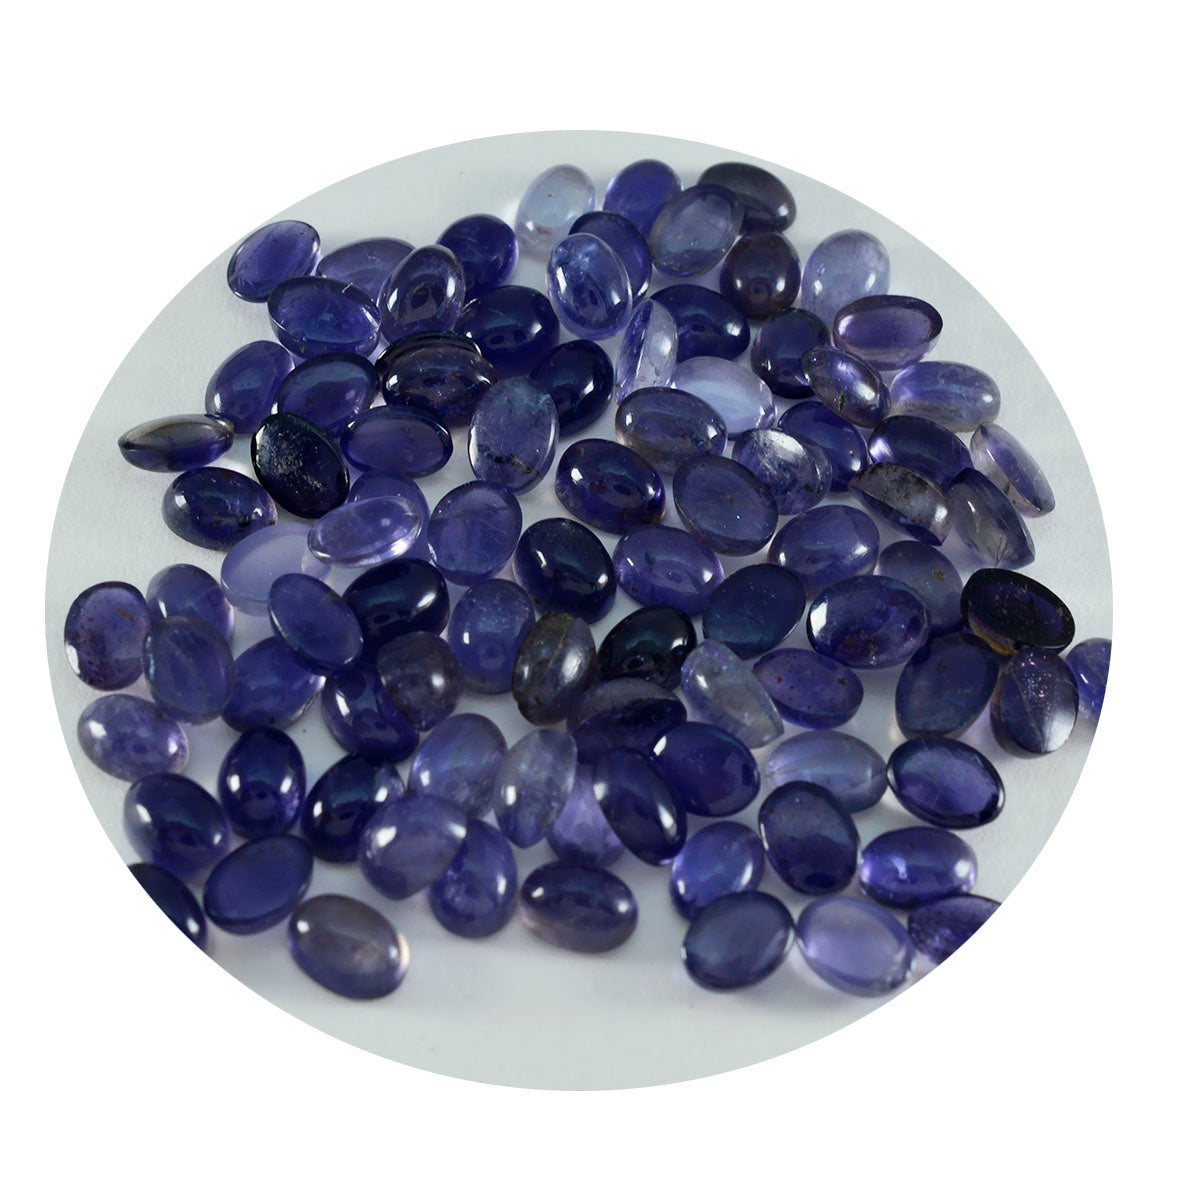 riyogems 1 шт. синий иолит кабошон 3x5 мм овальной формы красивый качественный свободный драгоценный камень